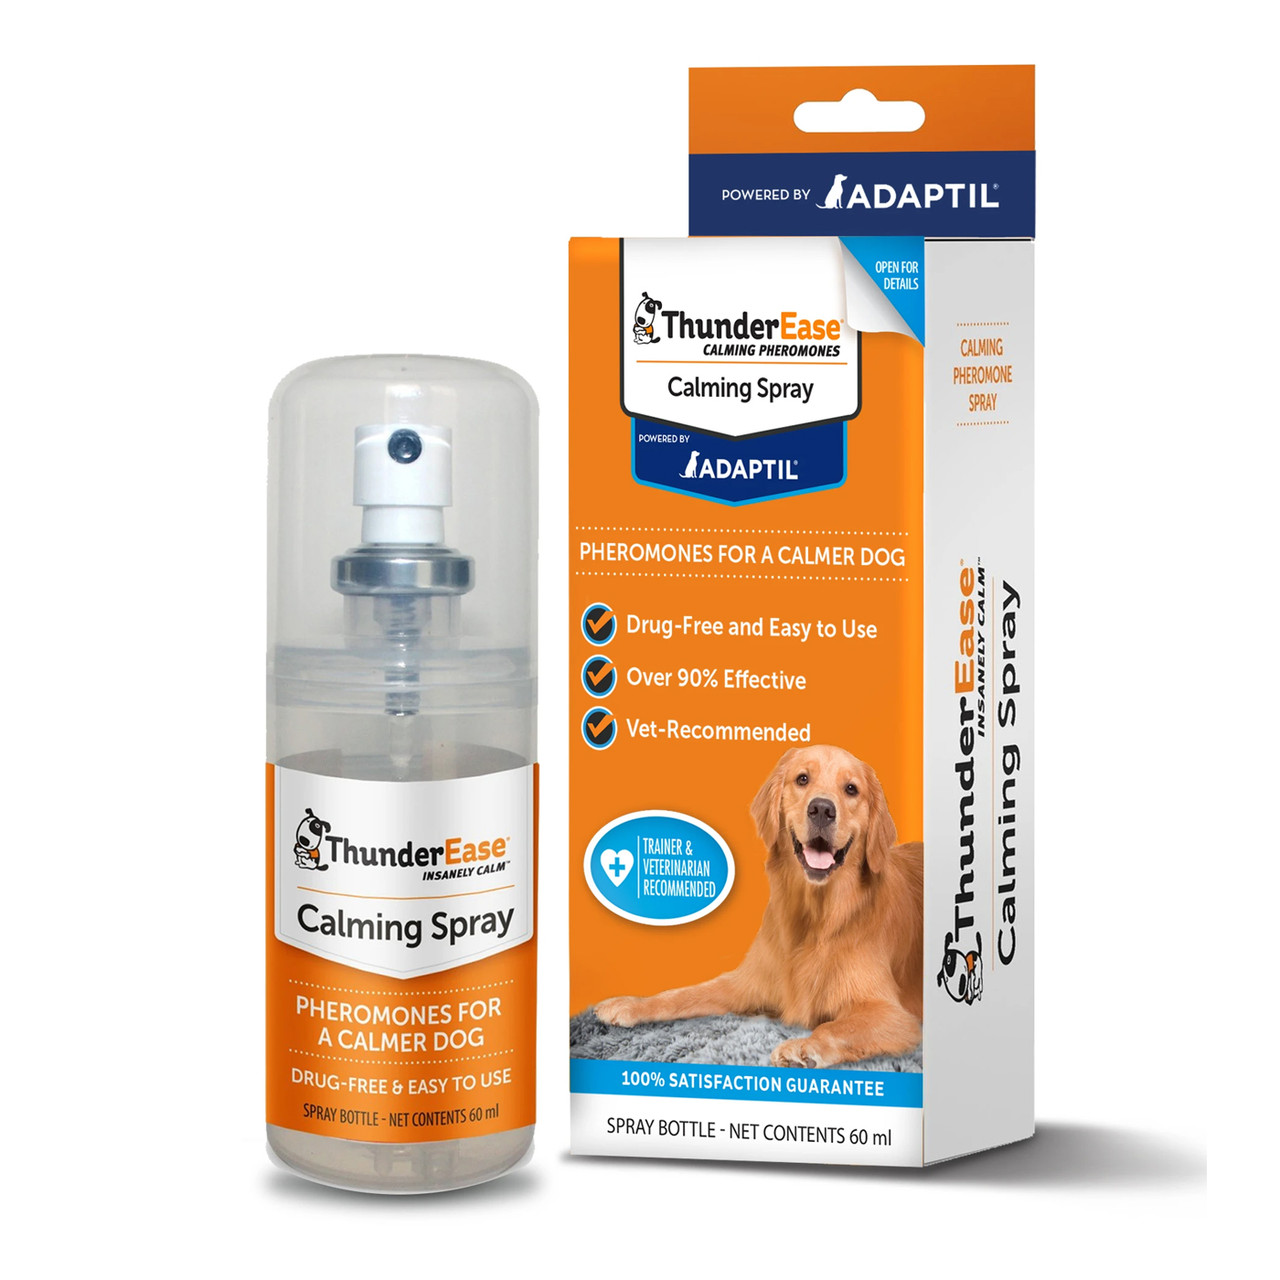 ThunderEase Dog Calming Spray